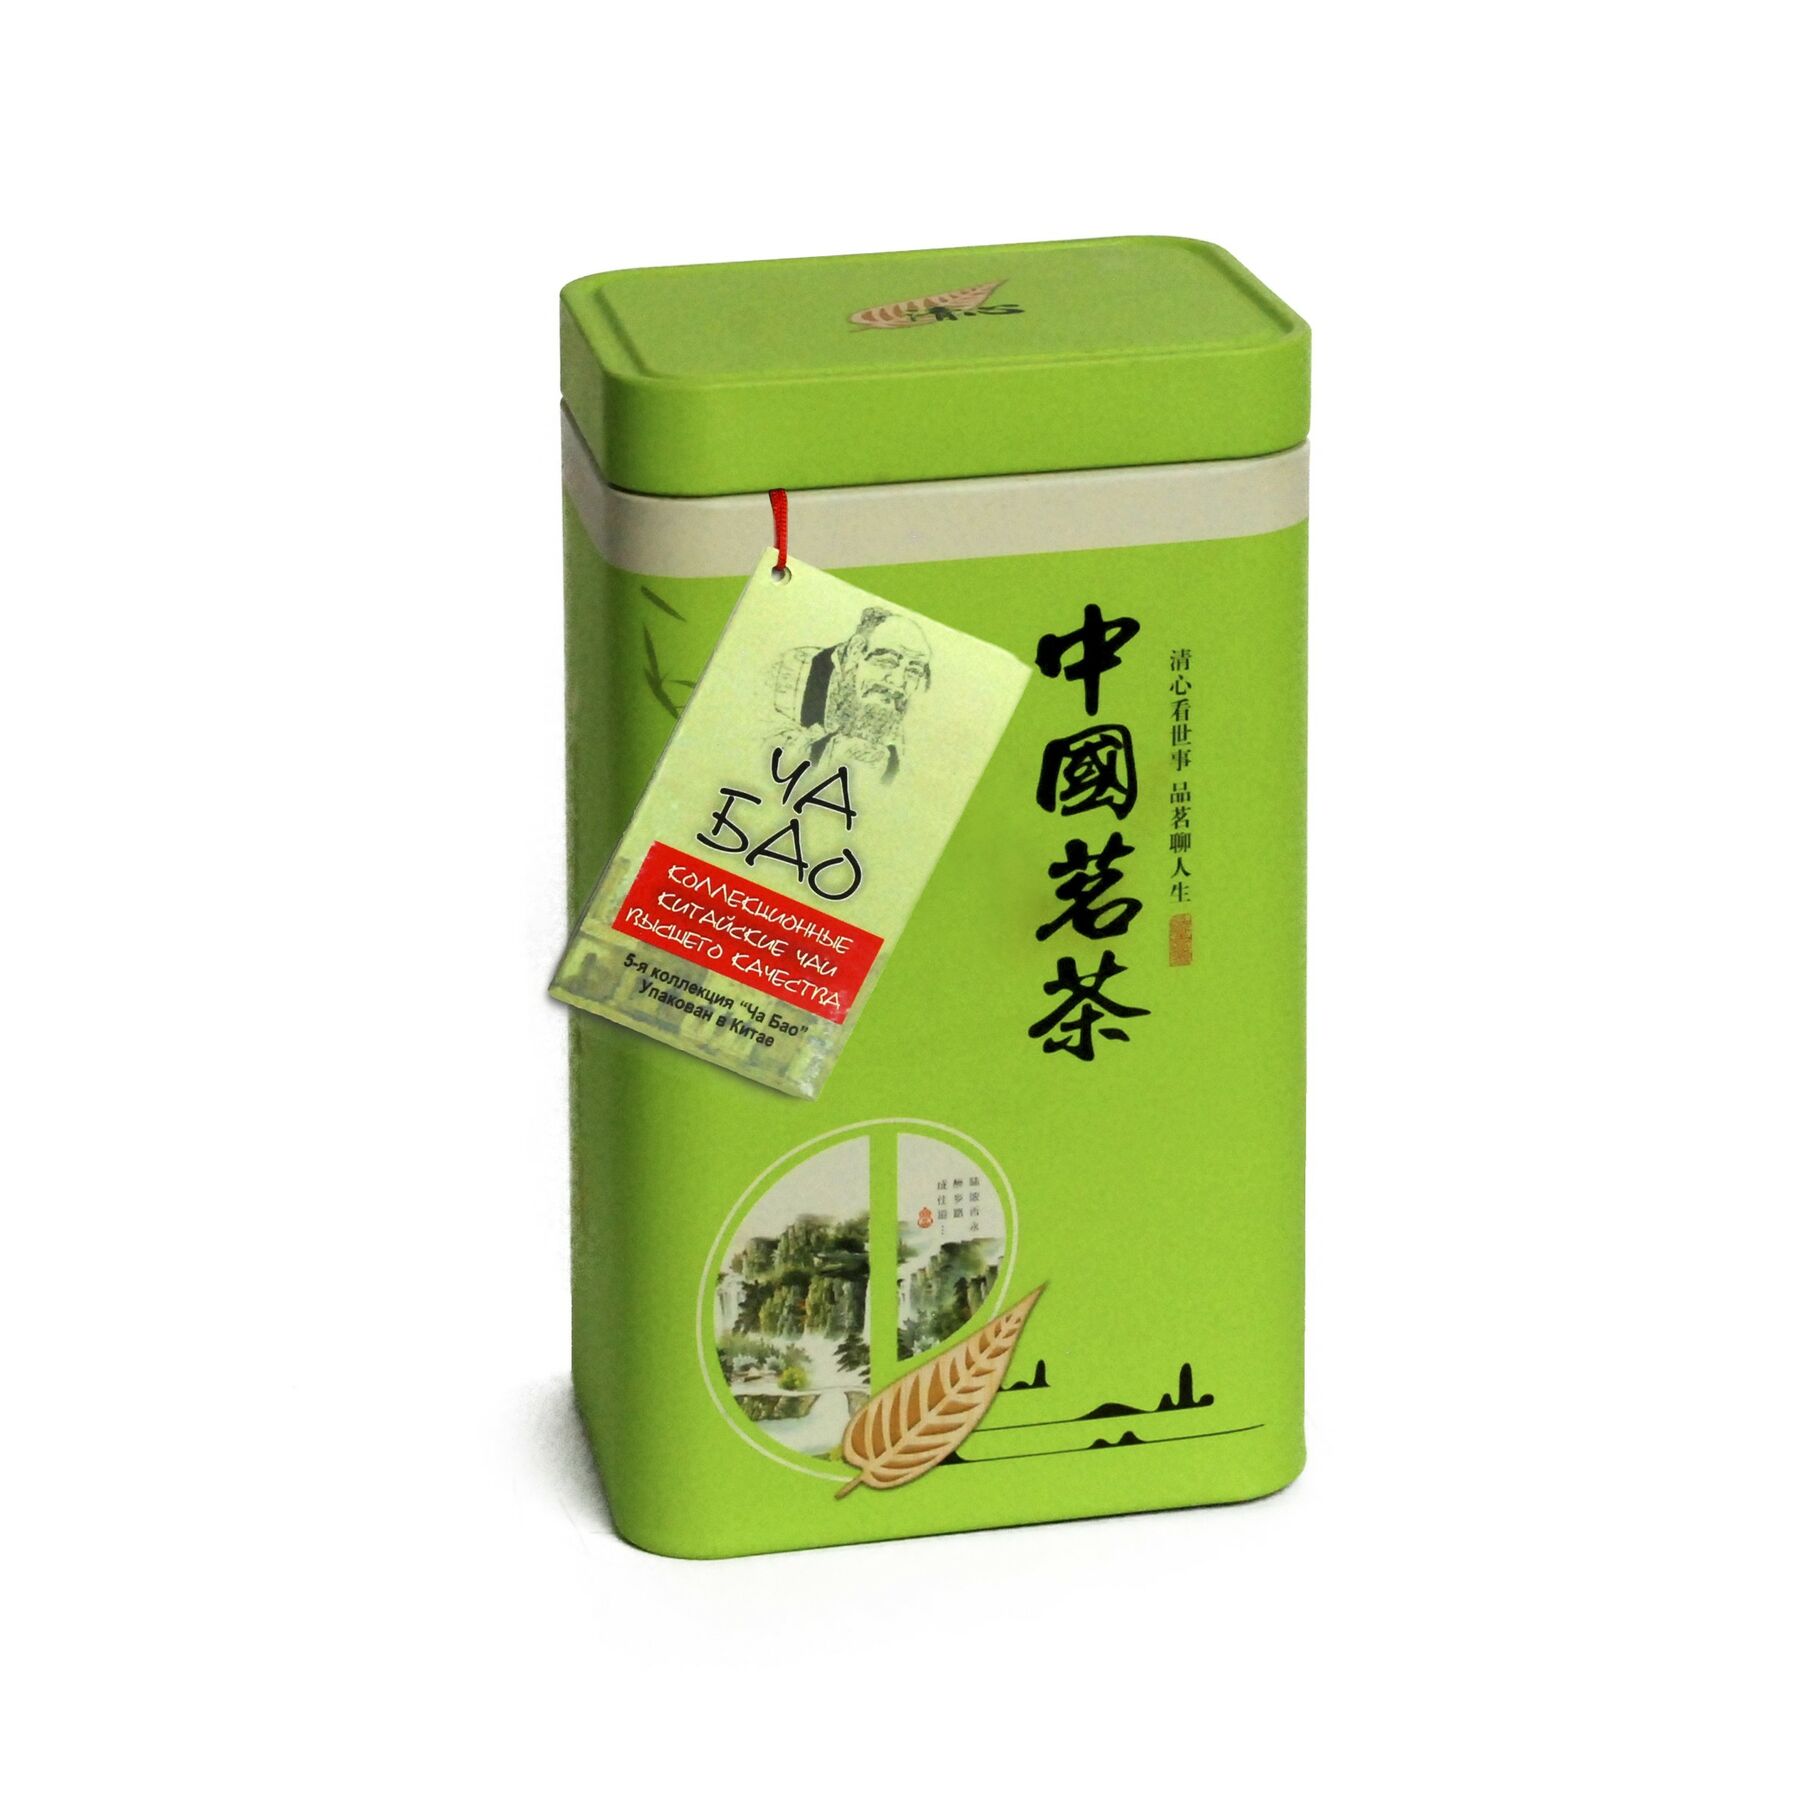 Чай "Ча Бао" Зеленый - Жасминовые шарики дракона, 50 гр.